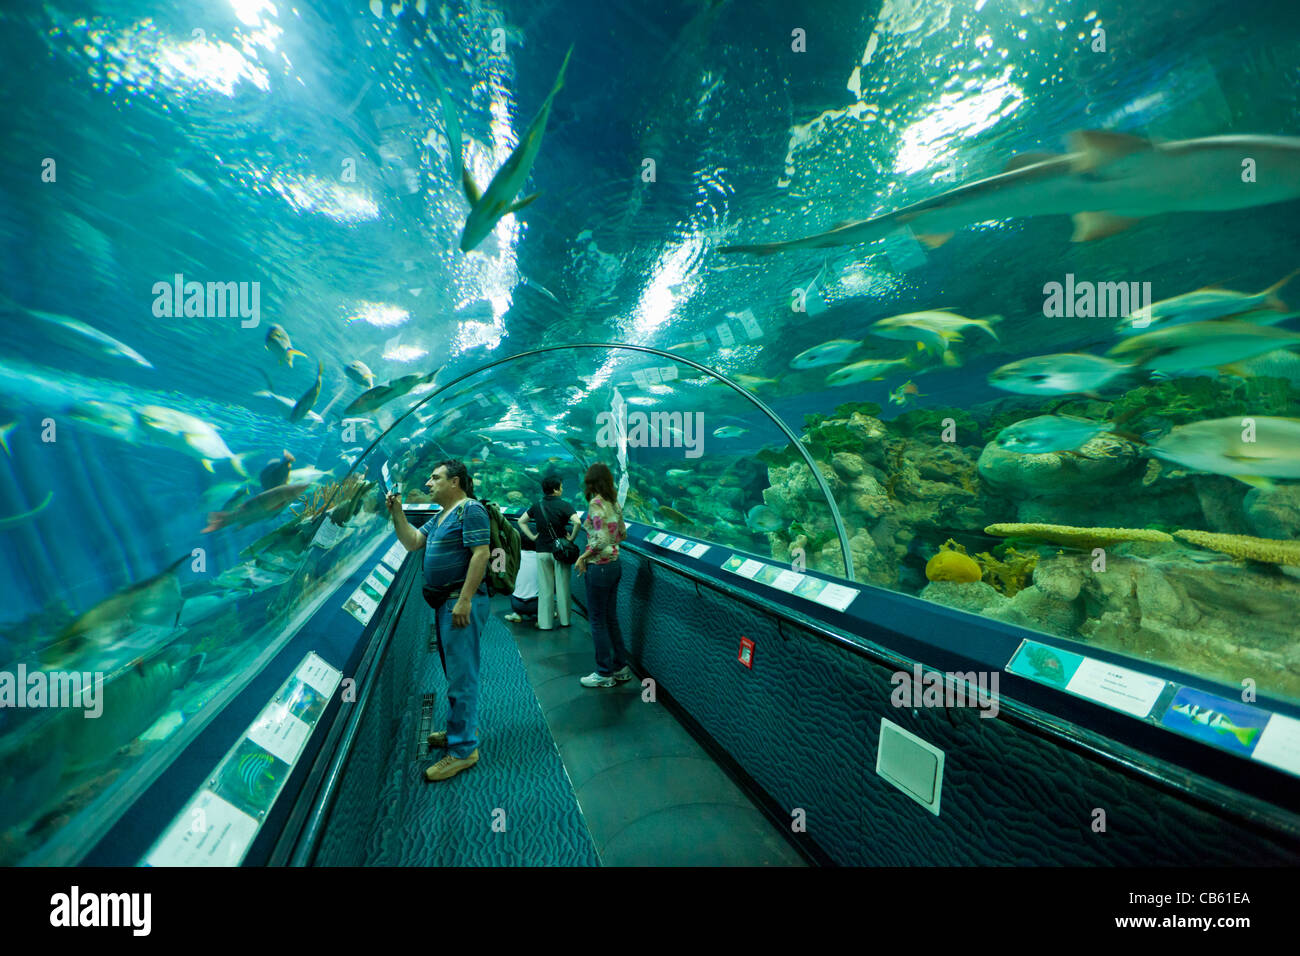 Les touristes au Shanghai ocean Aquarium, République populaire de Chine, République populaire de Chine, l'Asie Banque D'Images